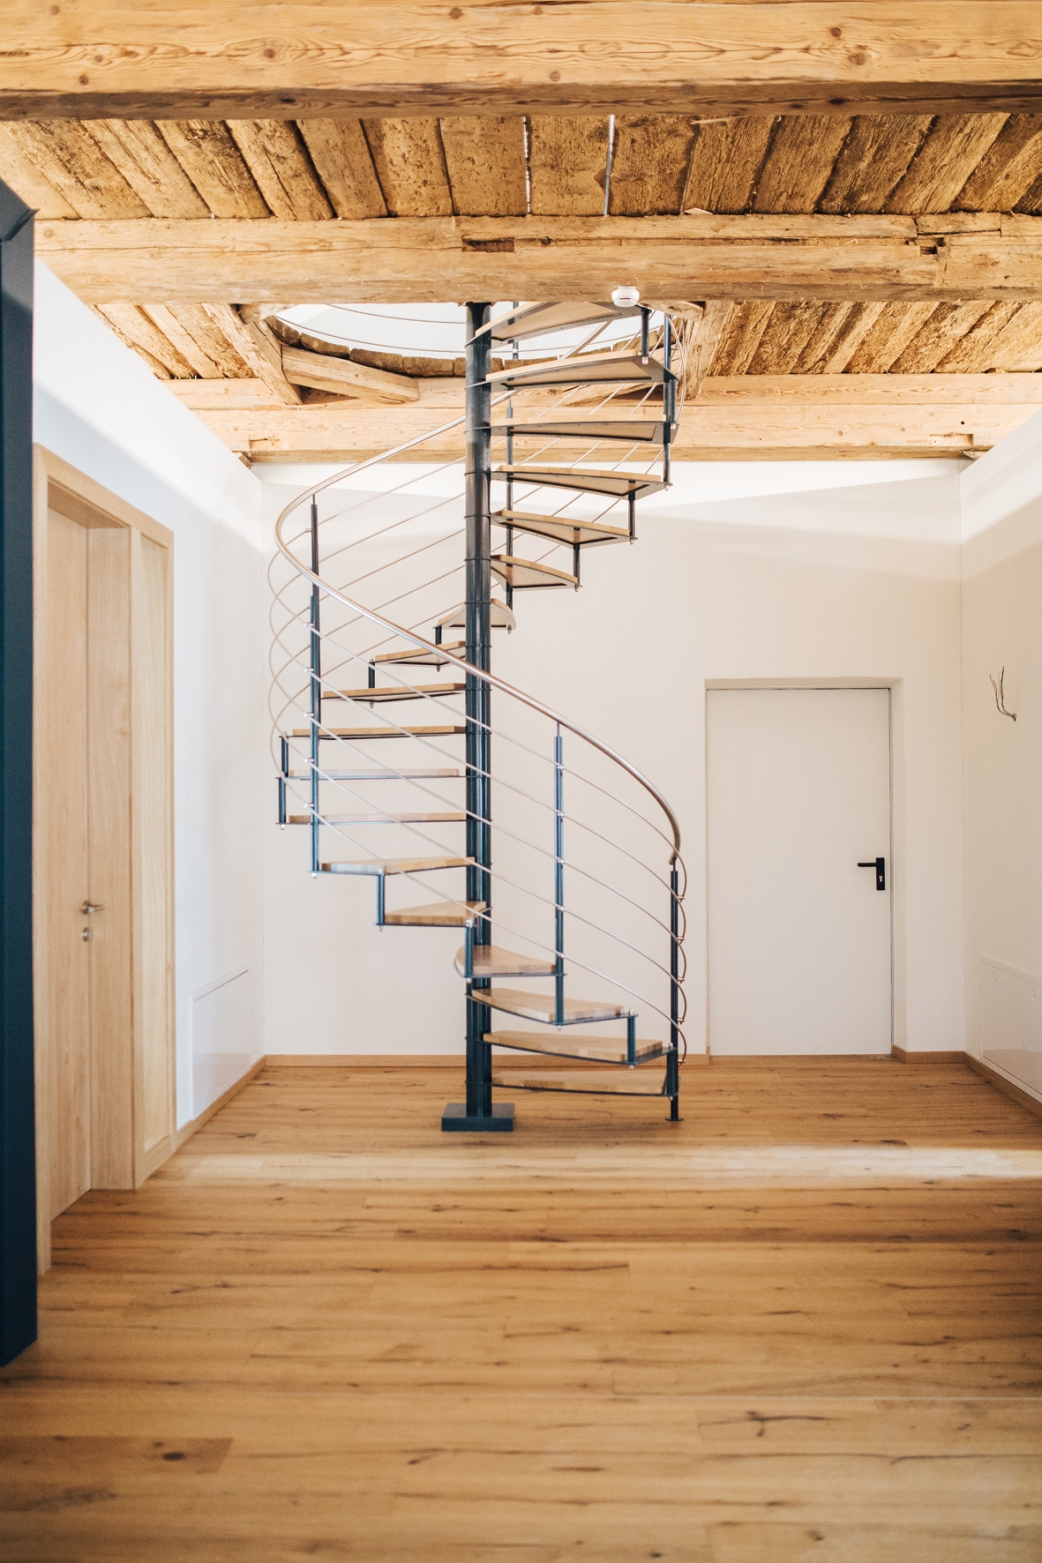 Plafond ancestral et sol neuf : l’escalier en colimaçon relie les deux univers avec finesse.